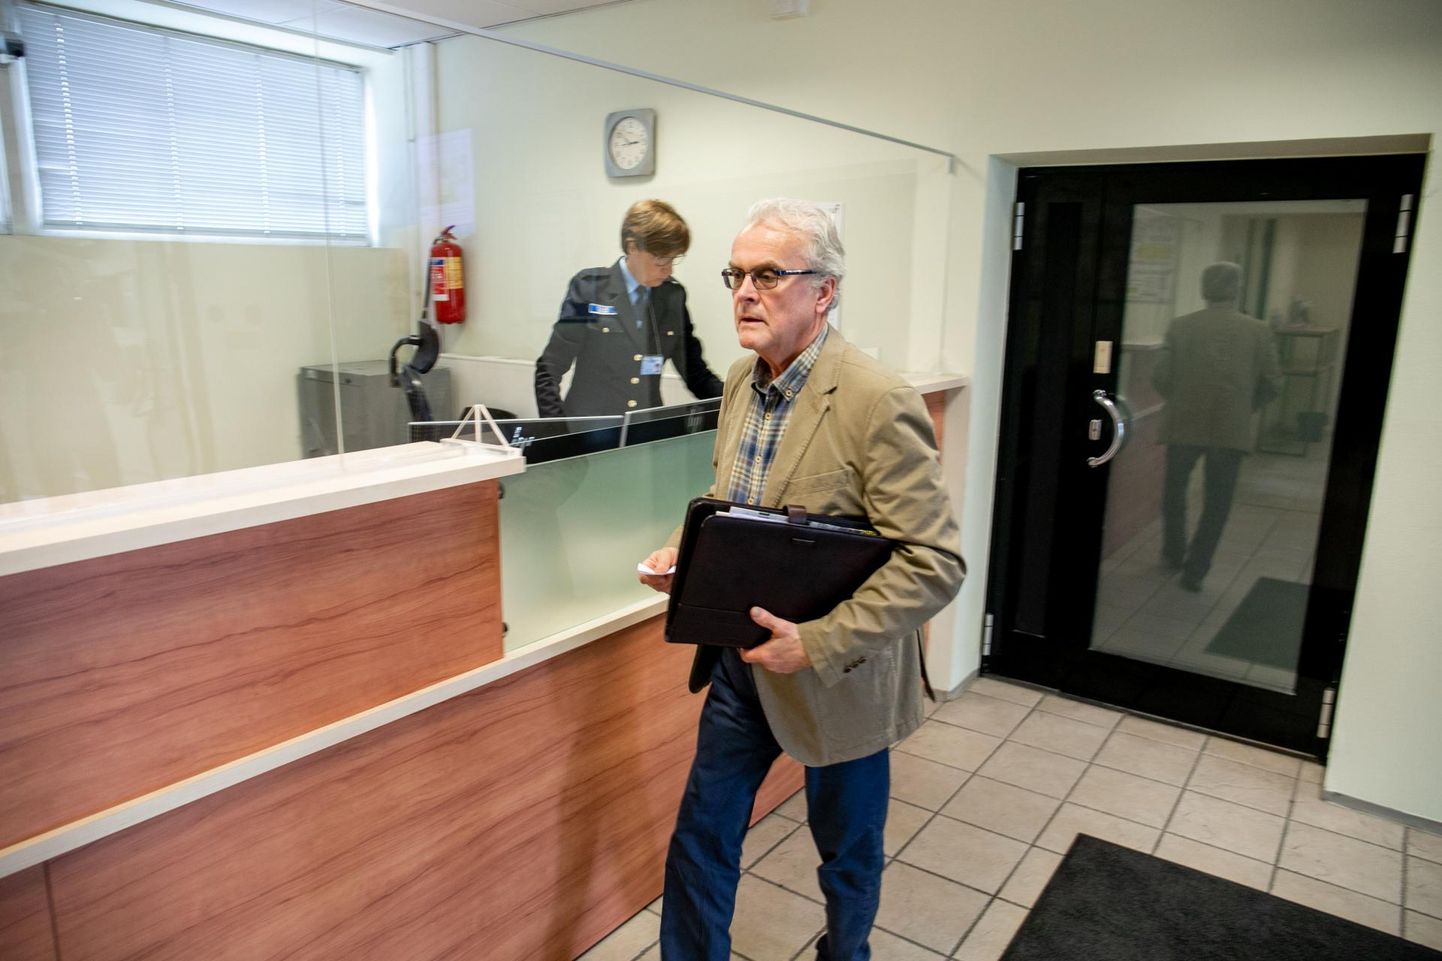 Адвокат Рюнно Роосмаа отправился в Пярнуское отделение полиции, чтобы впервые после ареста встретиться со своим клиентом Микком Таррасте.